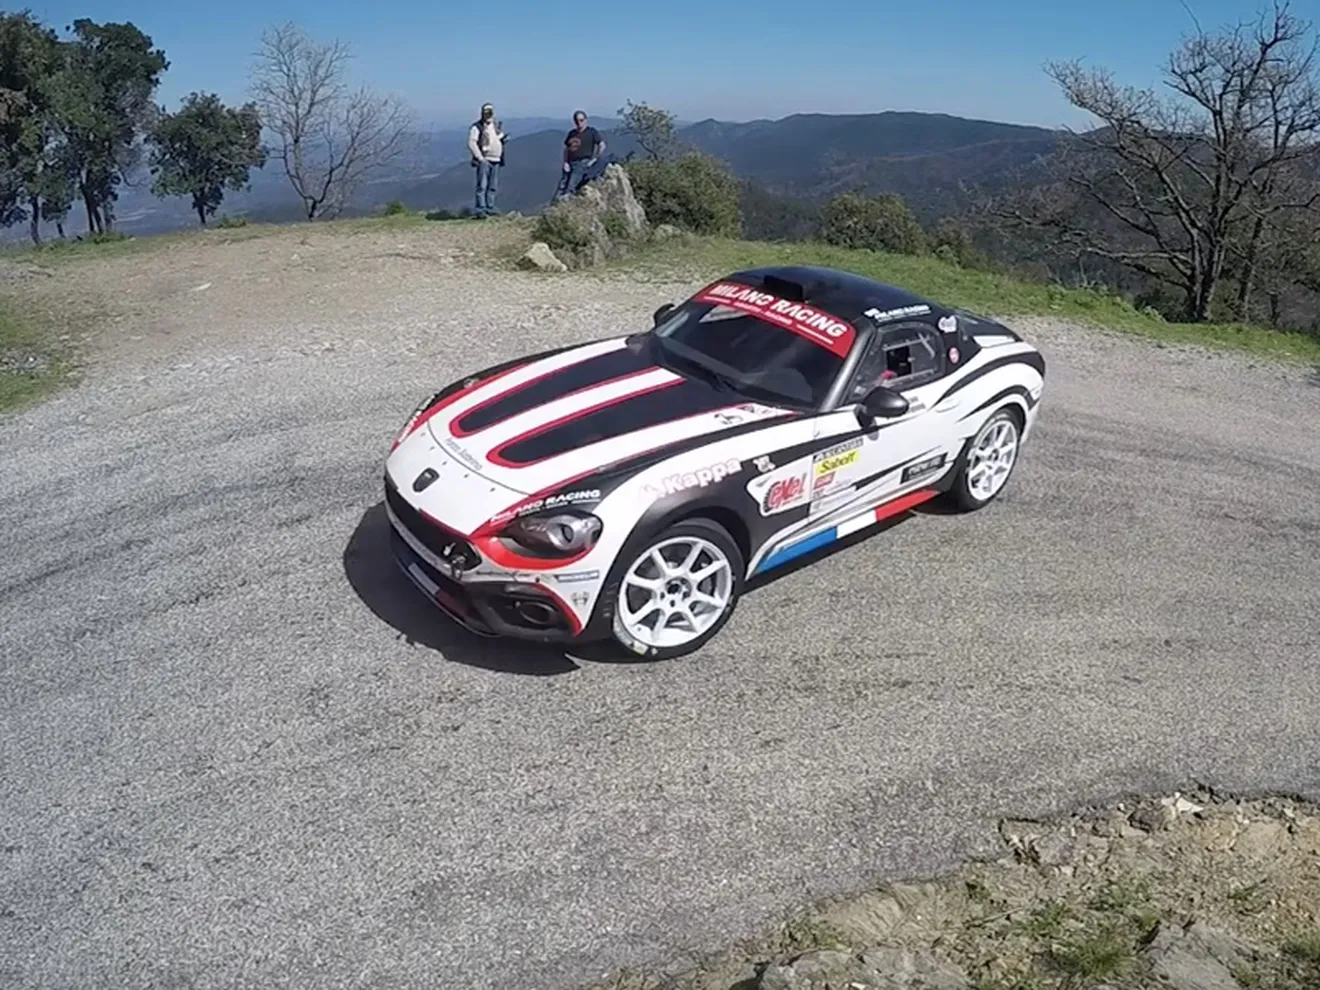 Test de François Delecour con el Abarth 124 Rally R-GT